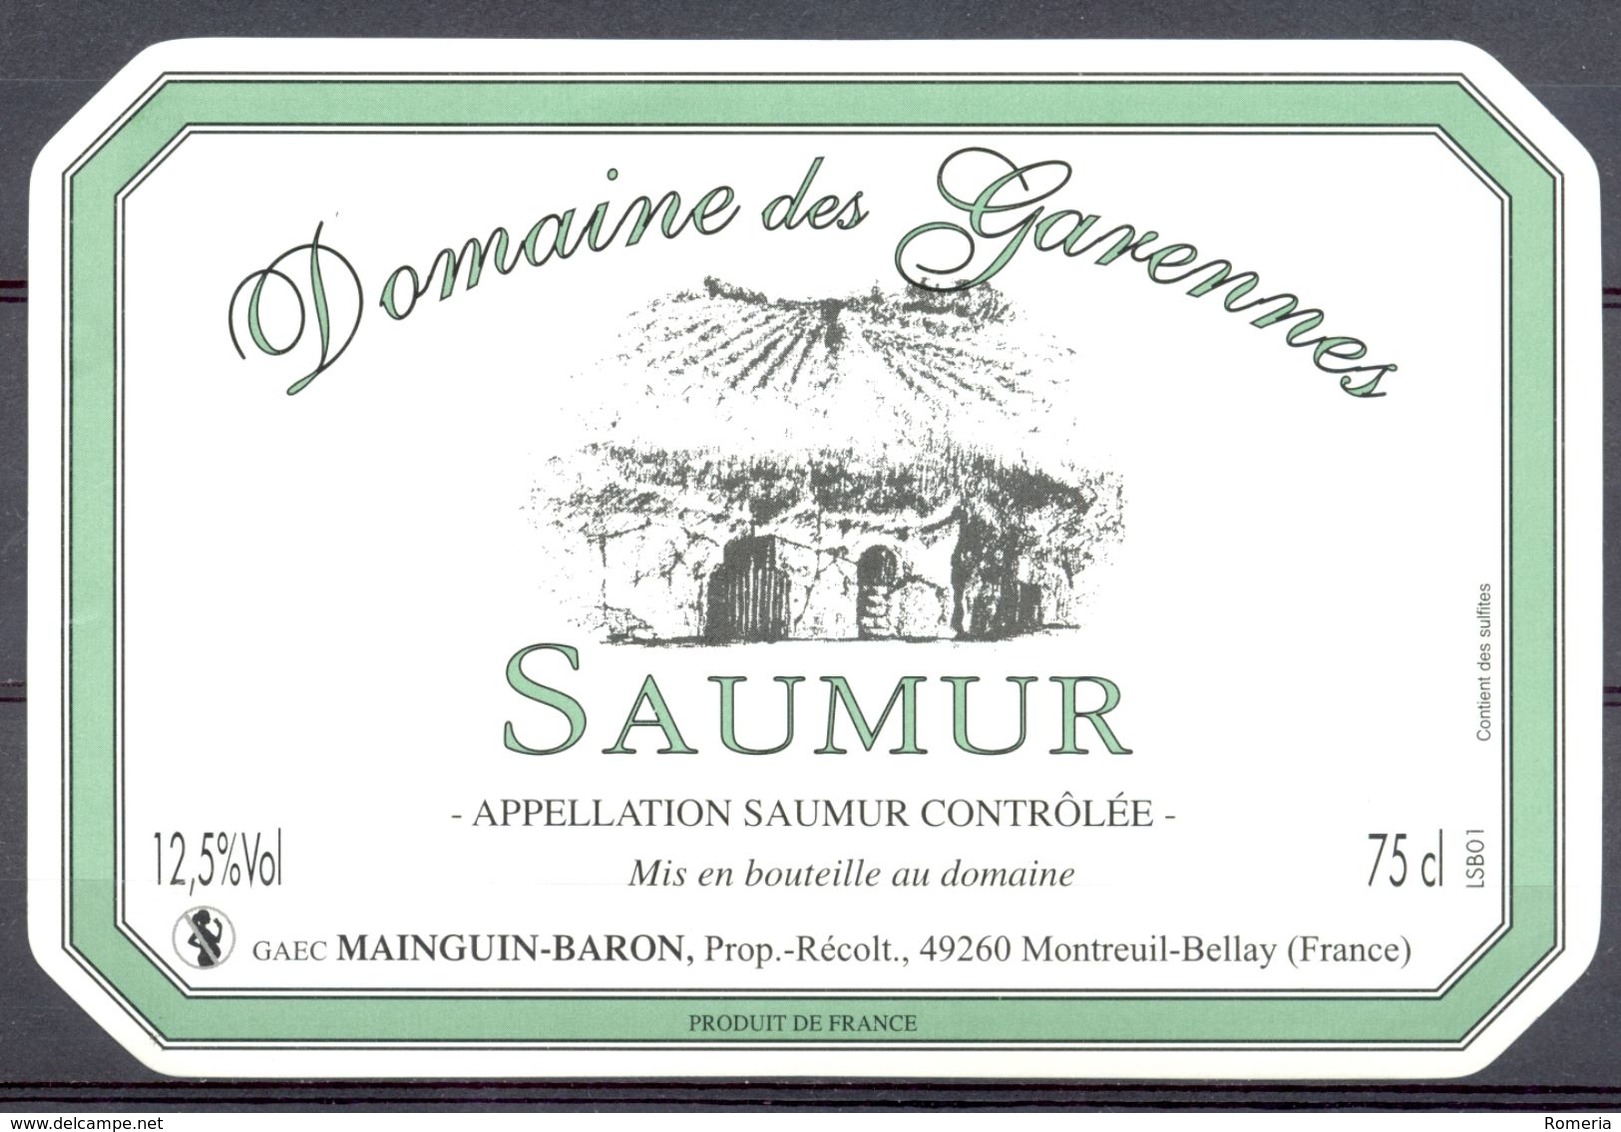 713 - Saumur - Domaine Des Garennes - GAEC Mainguin-Baron - Prop. Récoltant - 49260 Montreuil Bellay - Red Wines